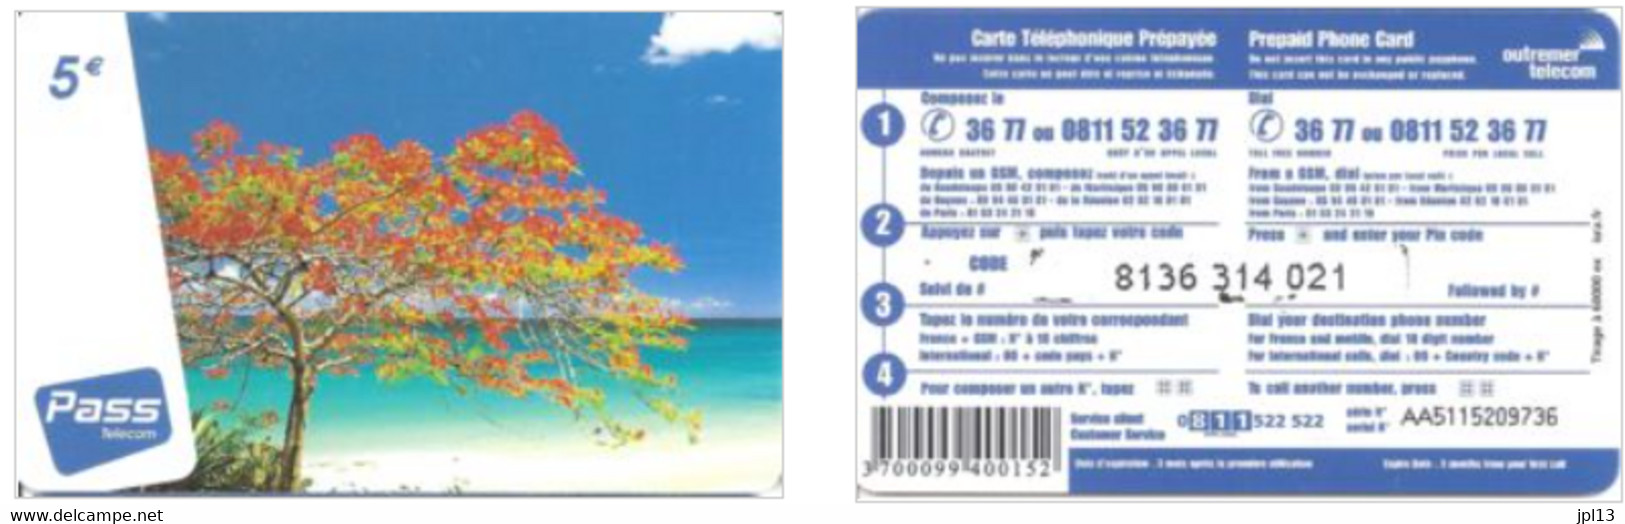 Carte Prépayée Outremer Telecom 5€ Flamboyant (Pass Telecom), Tirage 60.000 Ex., Série AA5115xxxxxx - Antillen (Französische)